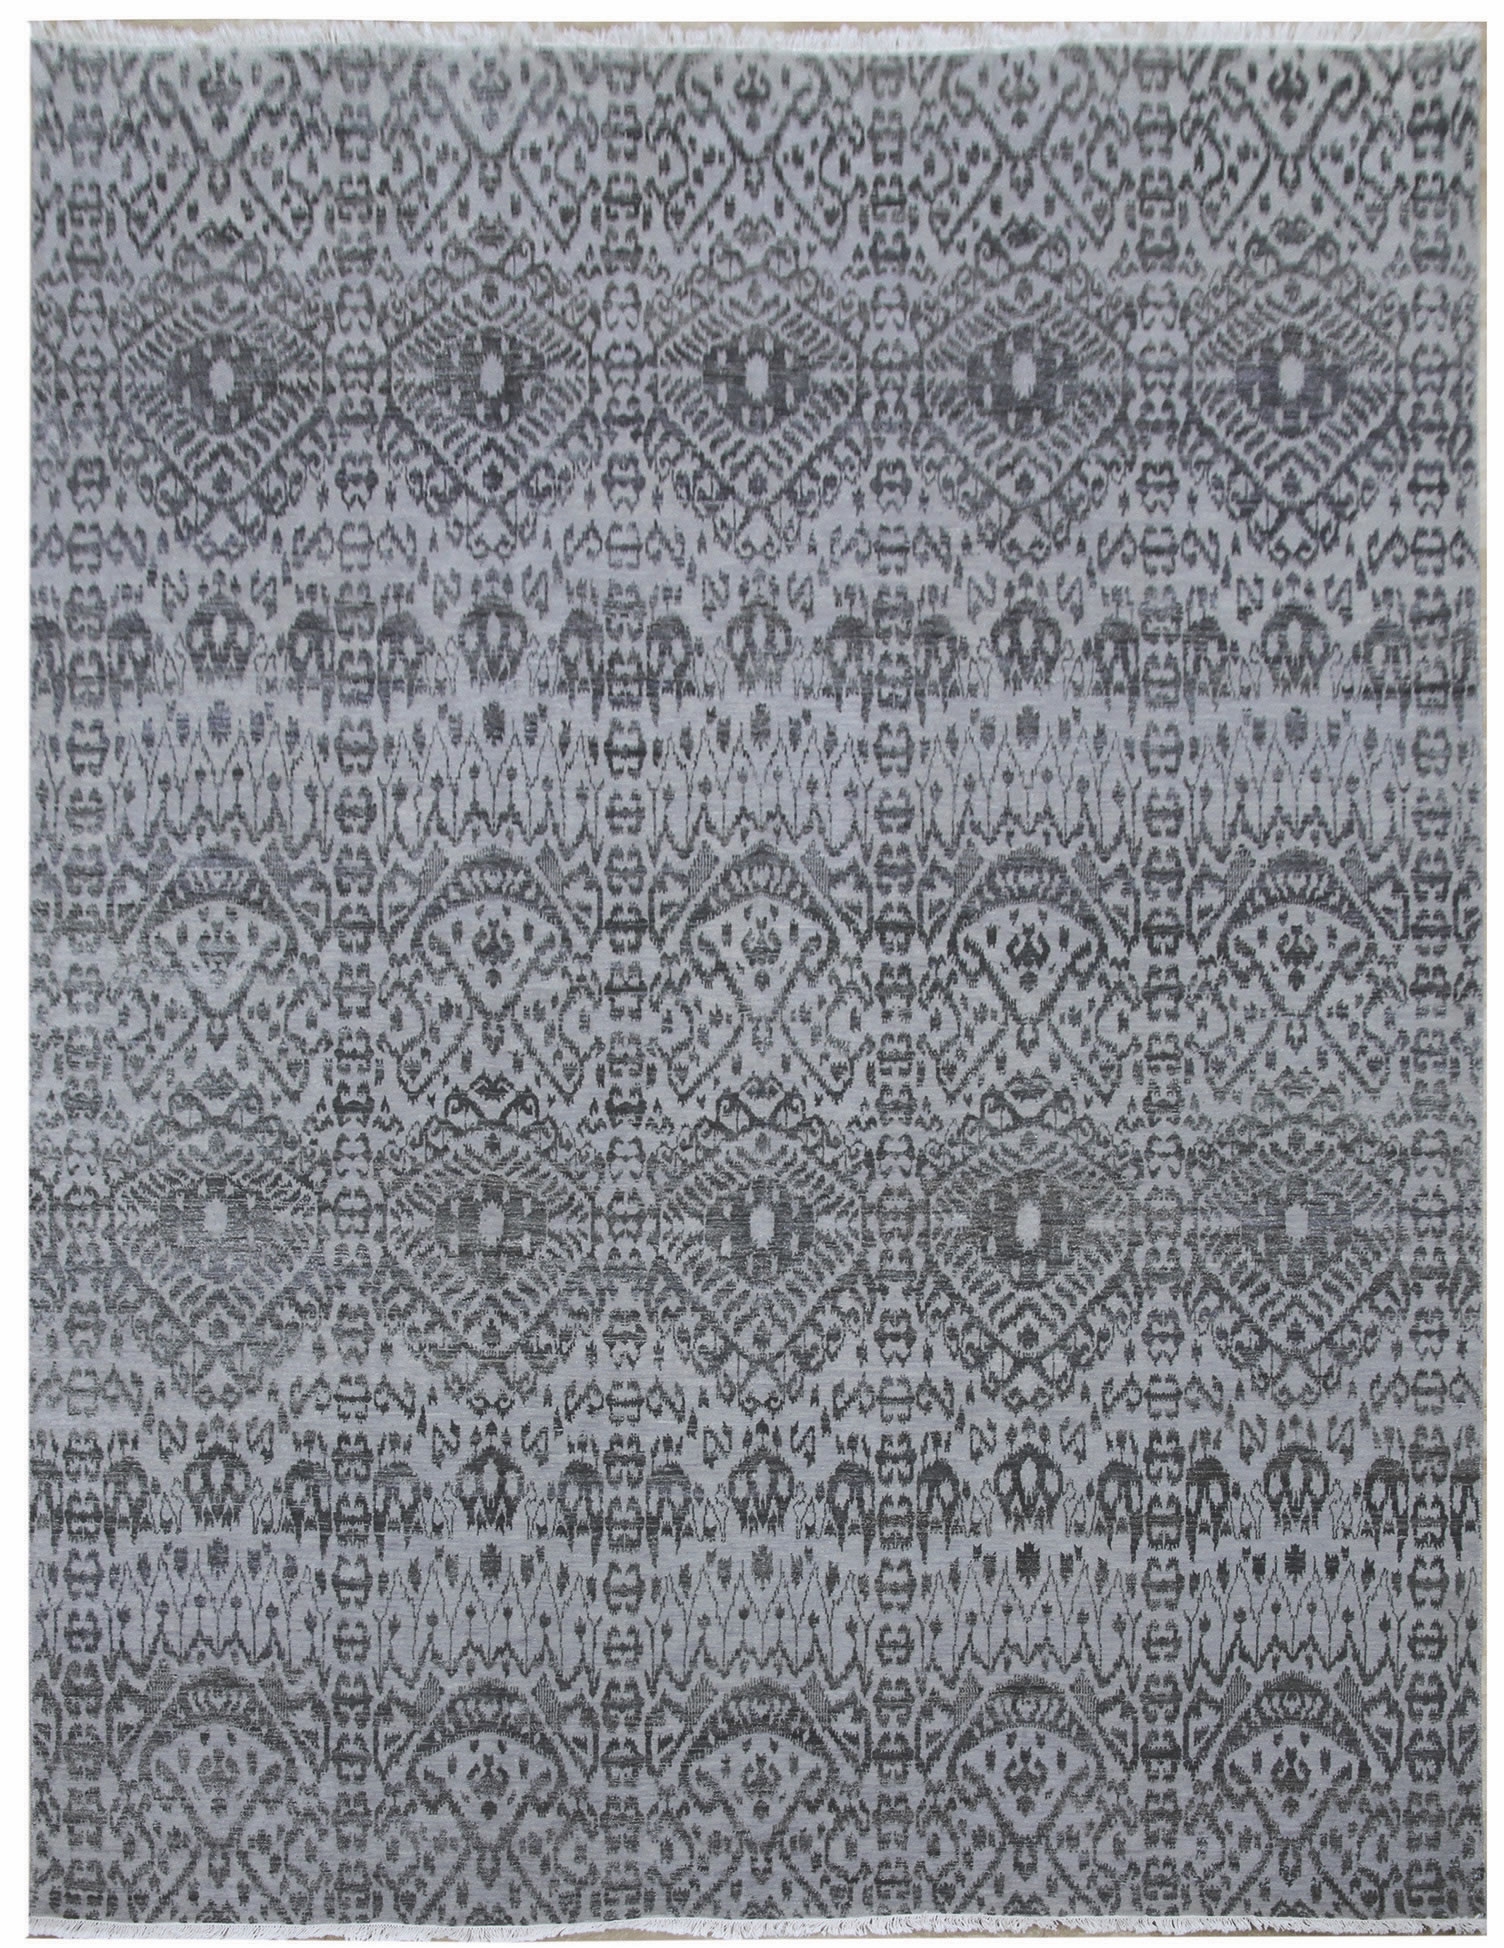 Ručne viazaný kusový koberec Diamond DC-EKT L silver / black - 305x425 cm Diamond Carpets koberce 